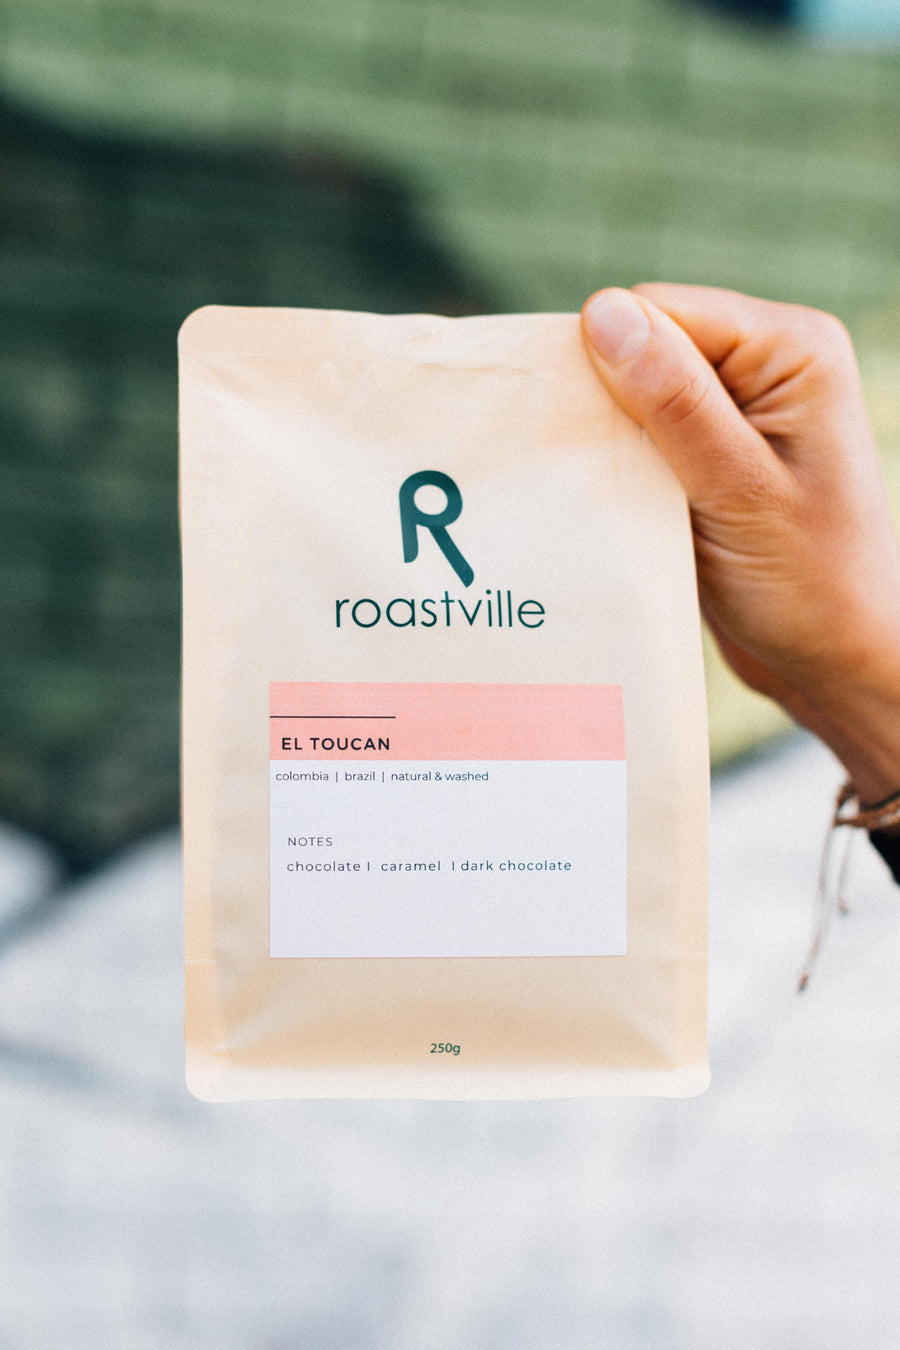 El Toucan - Espresso Roastville